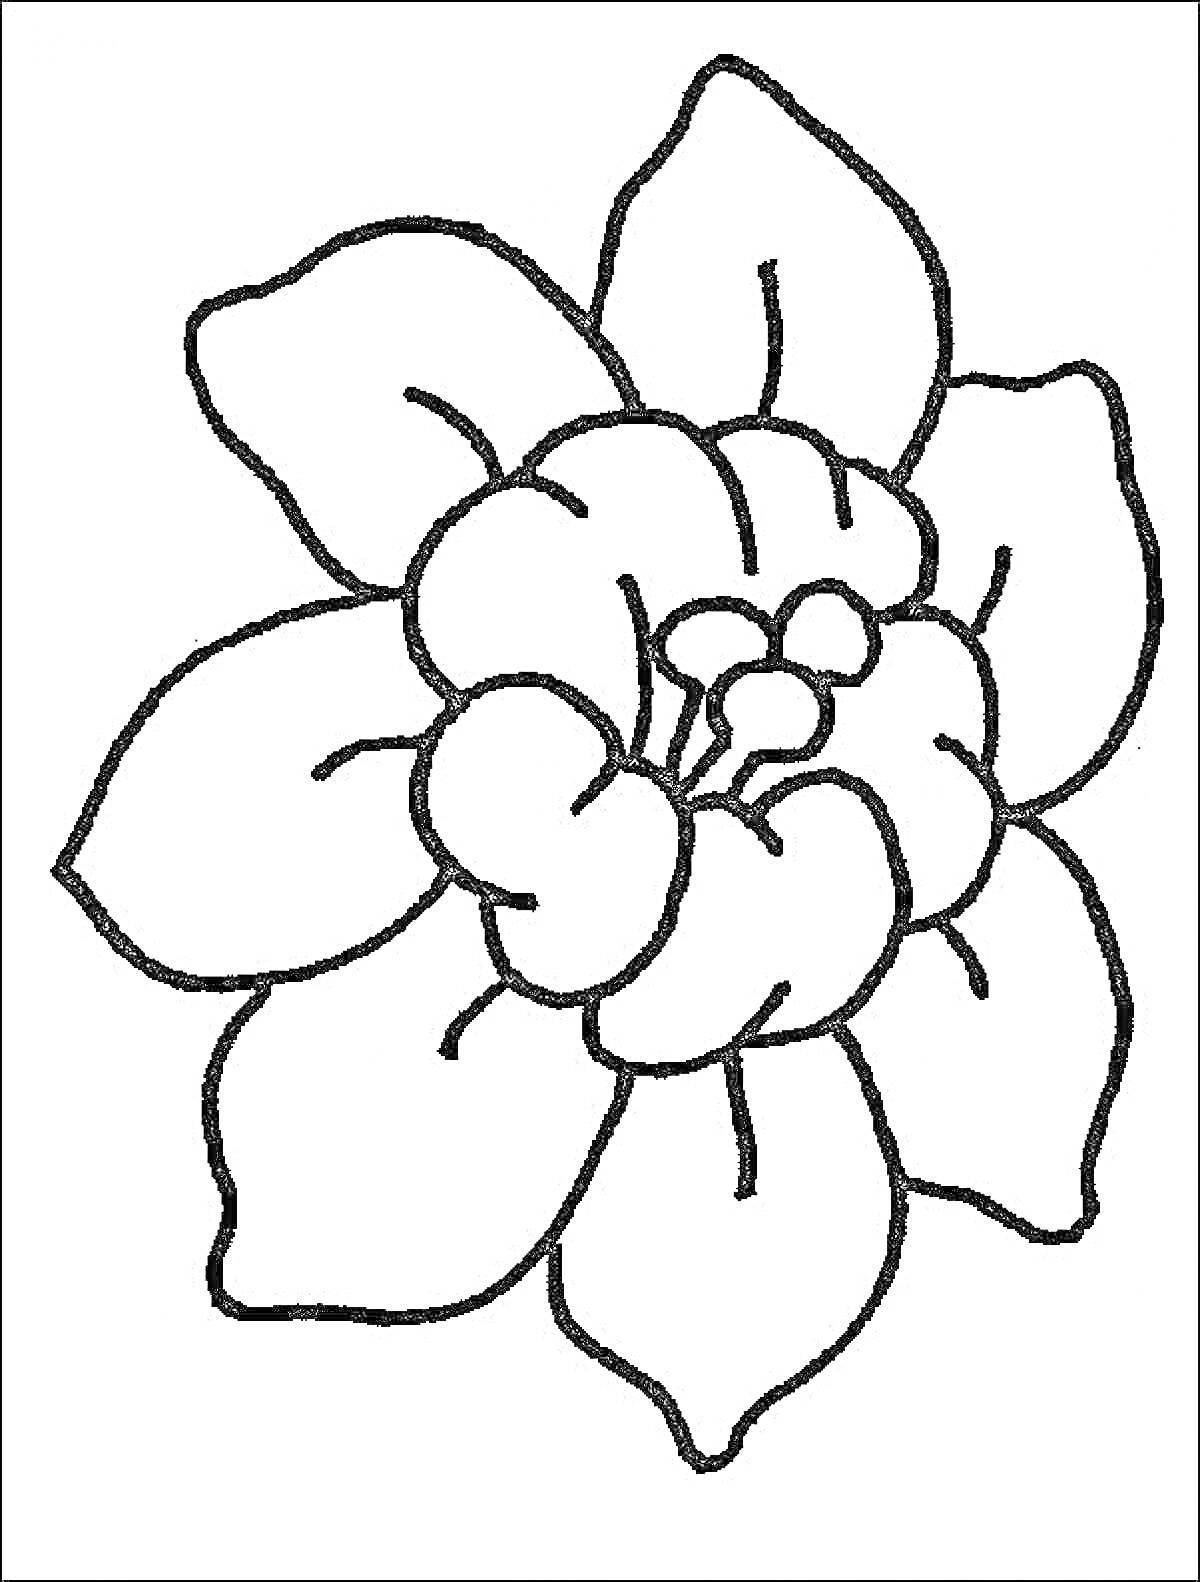 Раскраска Раскраска с изображением цветка с семью лепестками и бутоном в центре